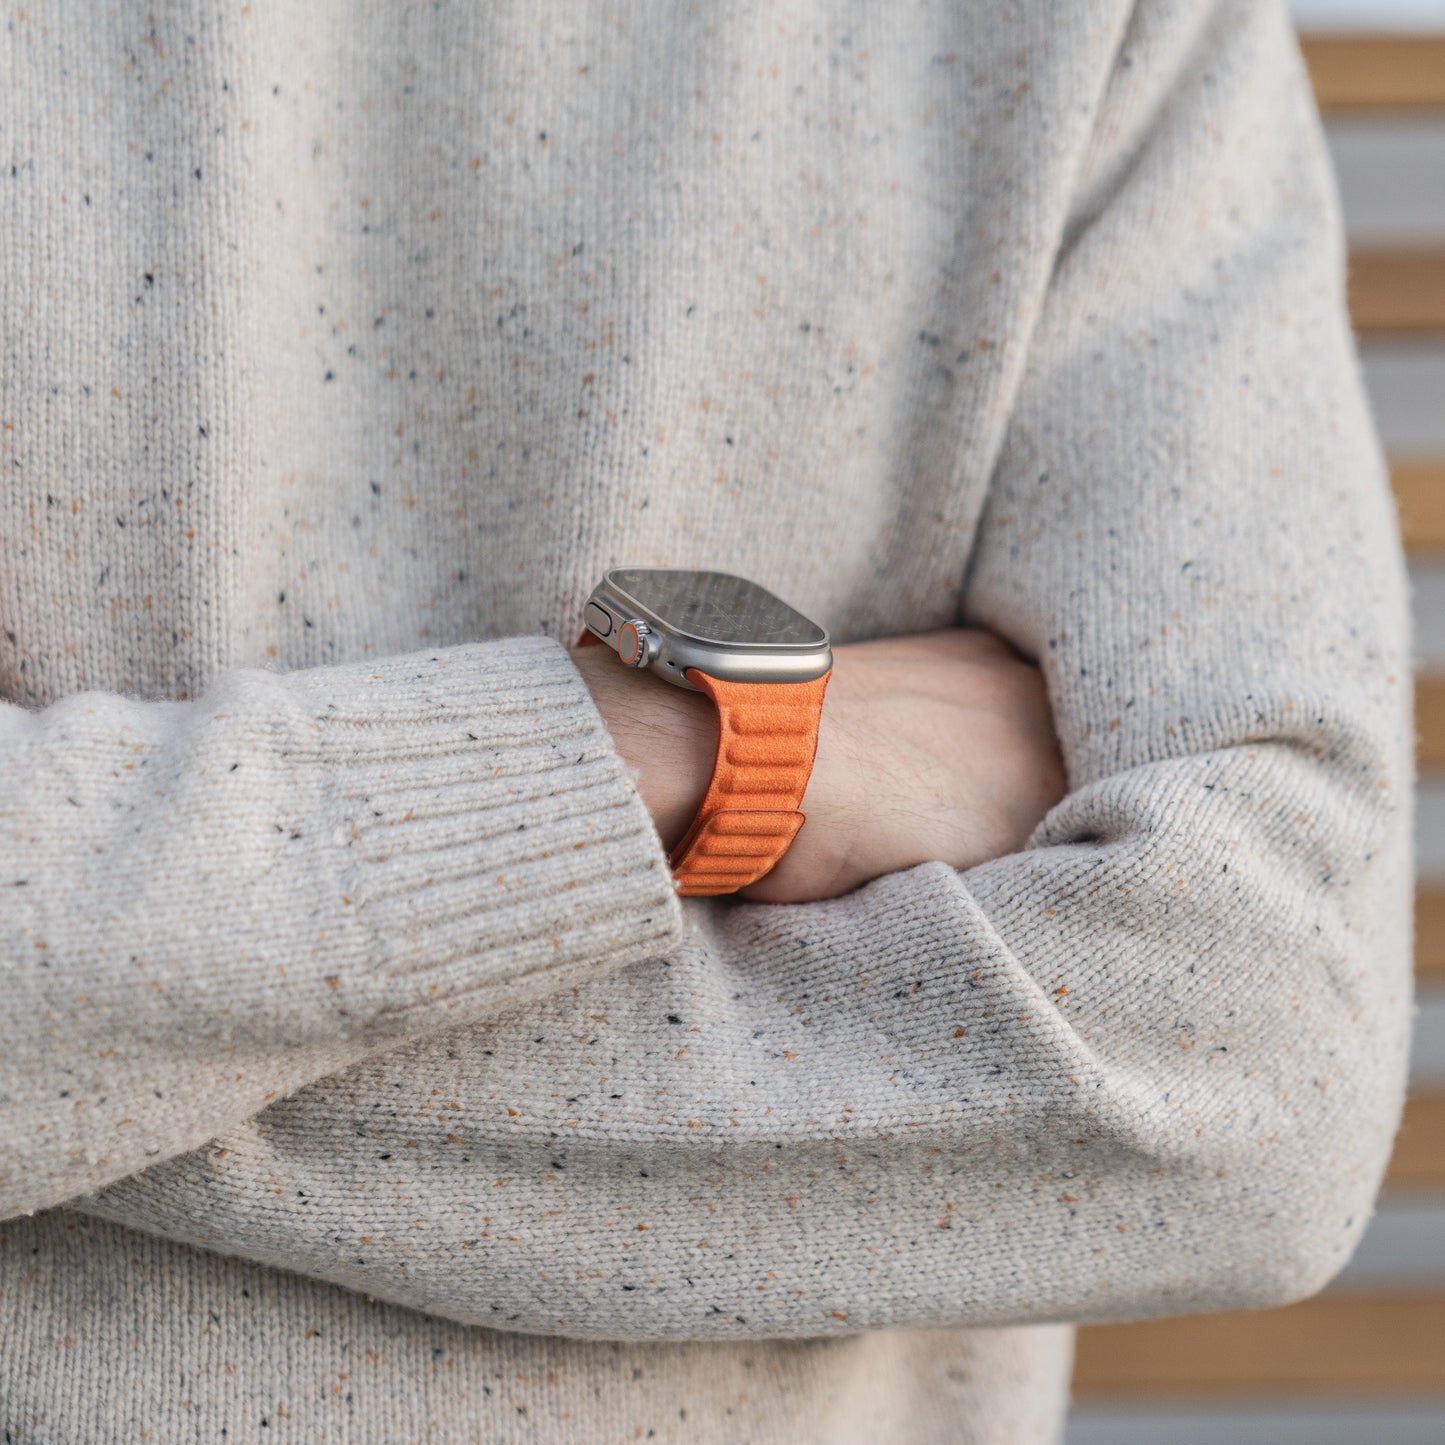 arktisband Apple Watch magnetisches Armband aus Alcantara